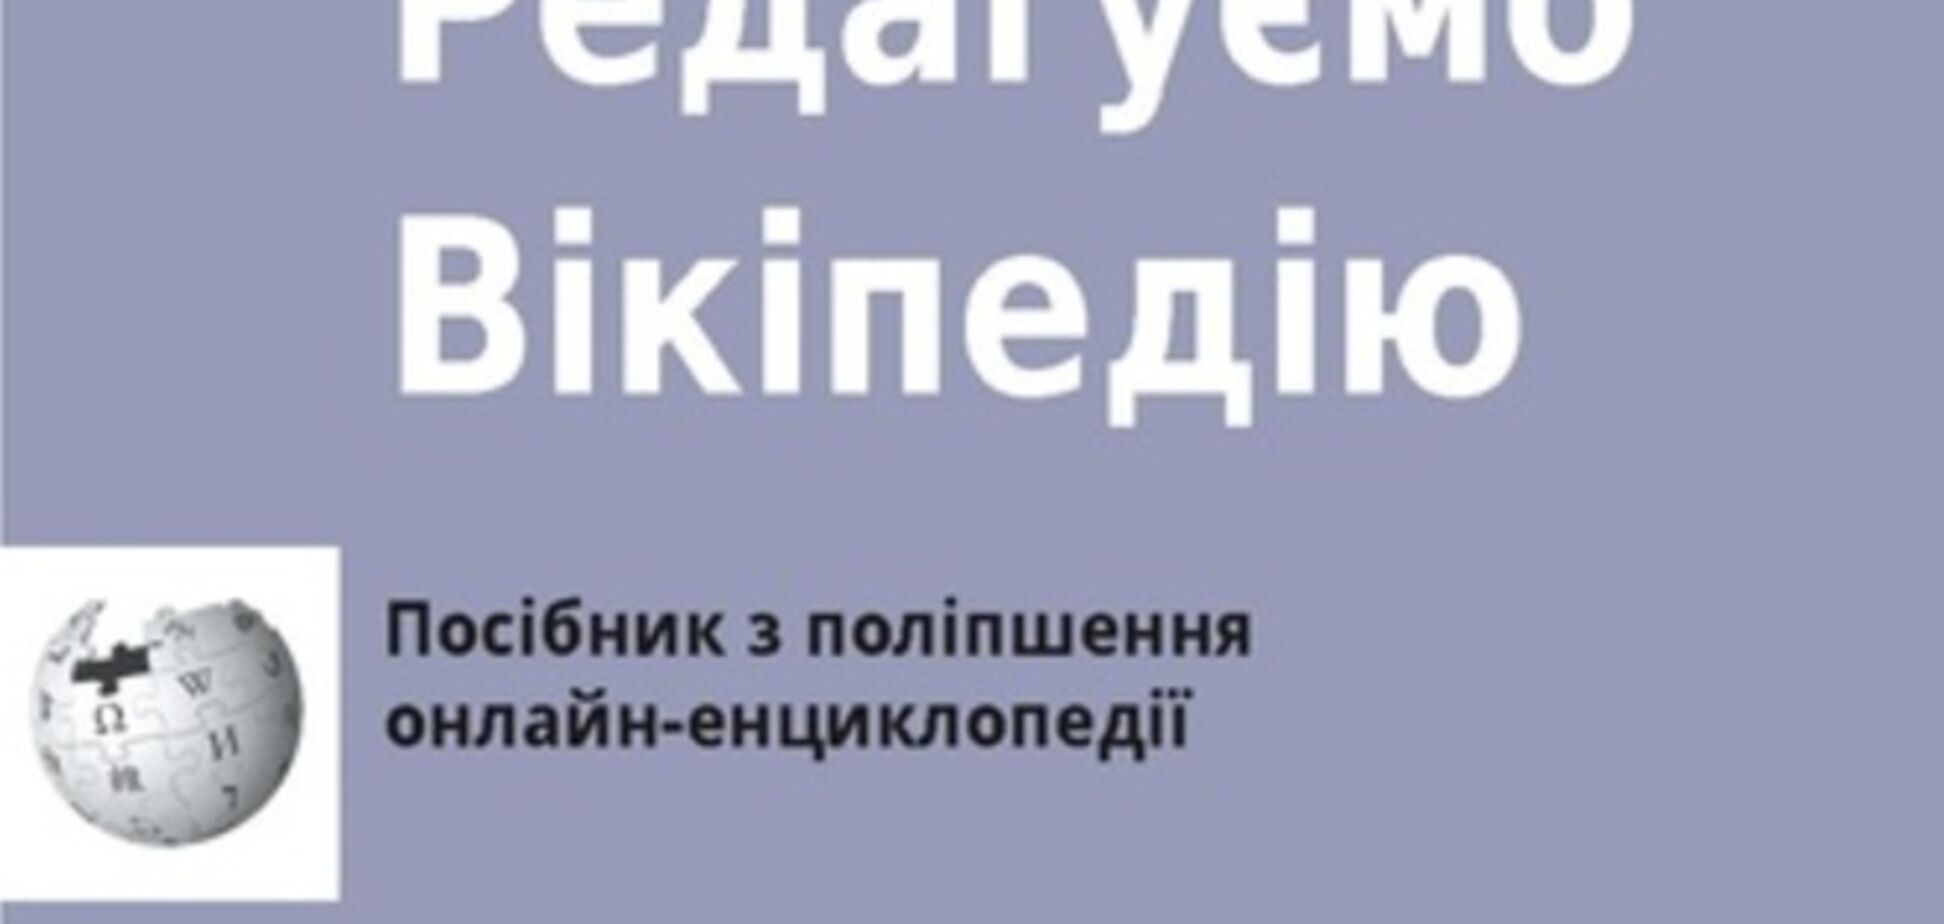 Брошюра по редактированию Википедии стала доступна и на украинском языке